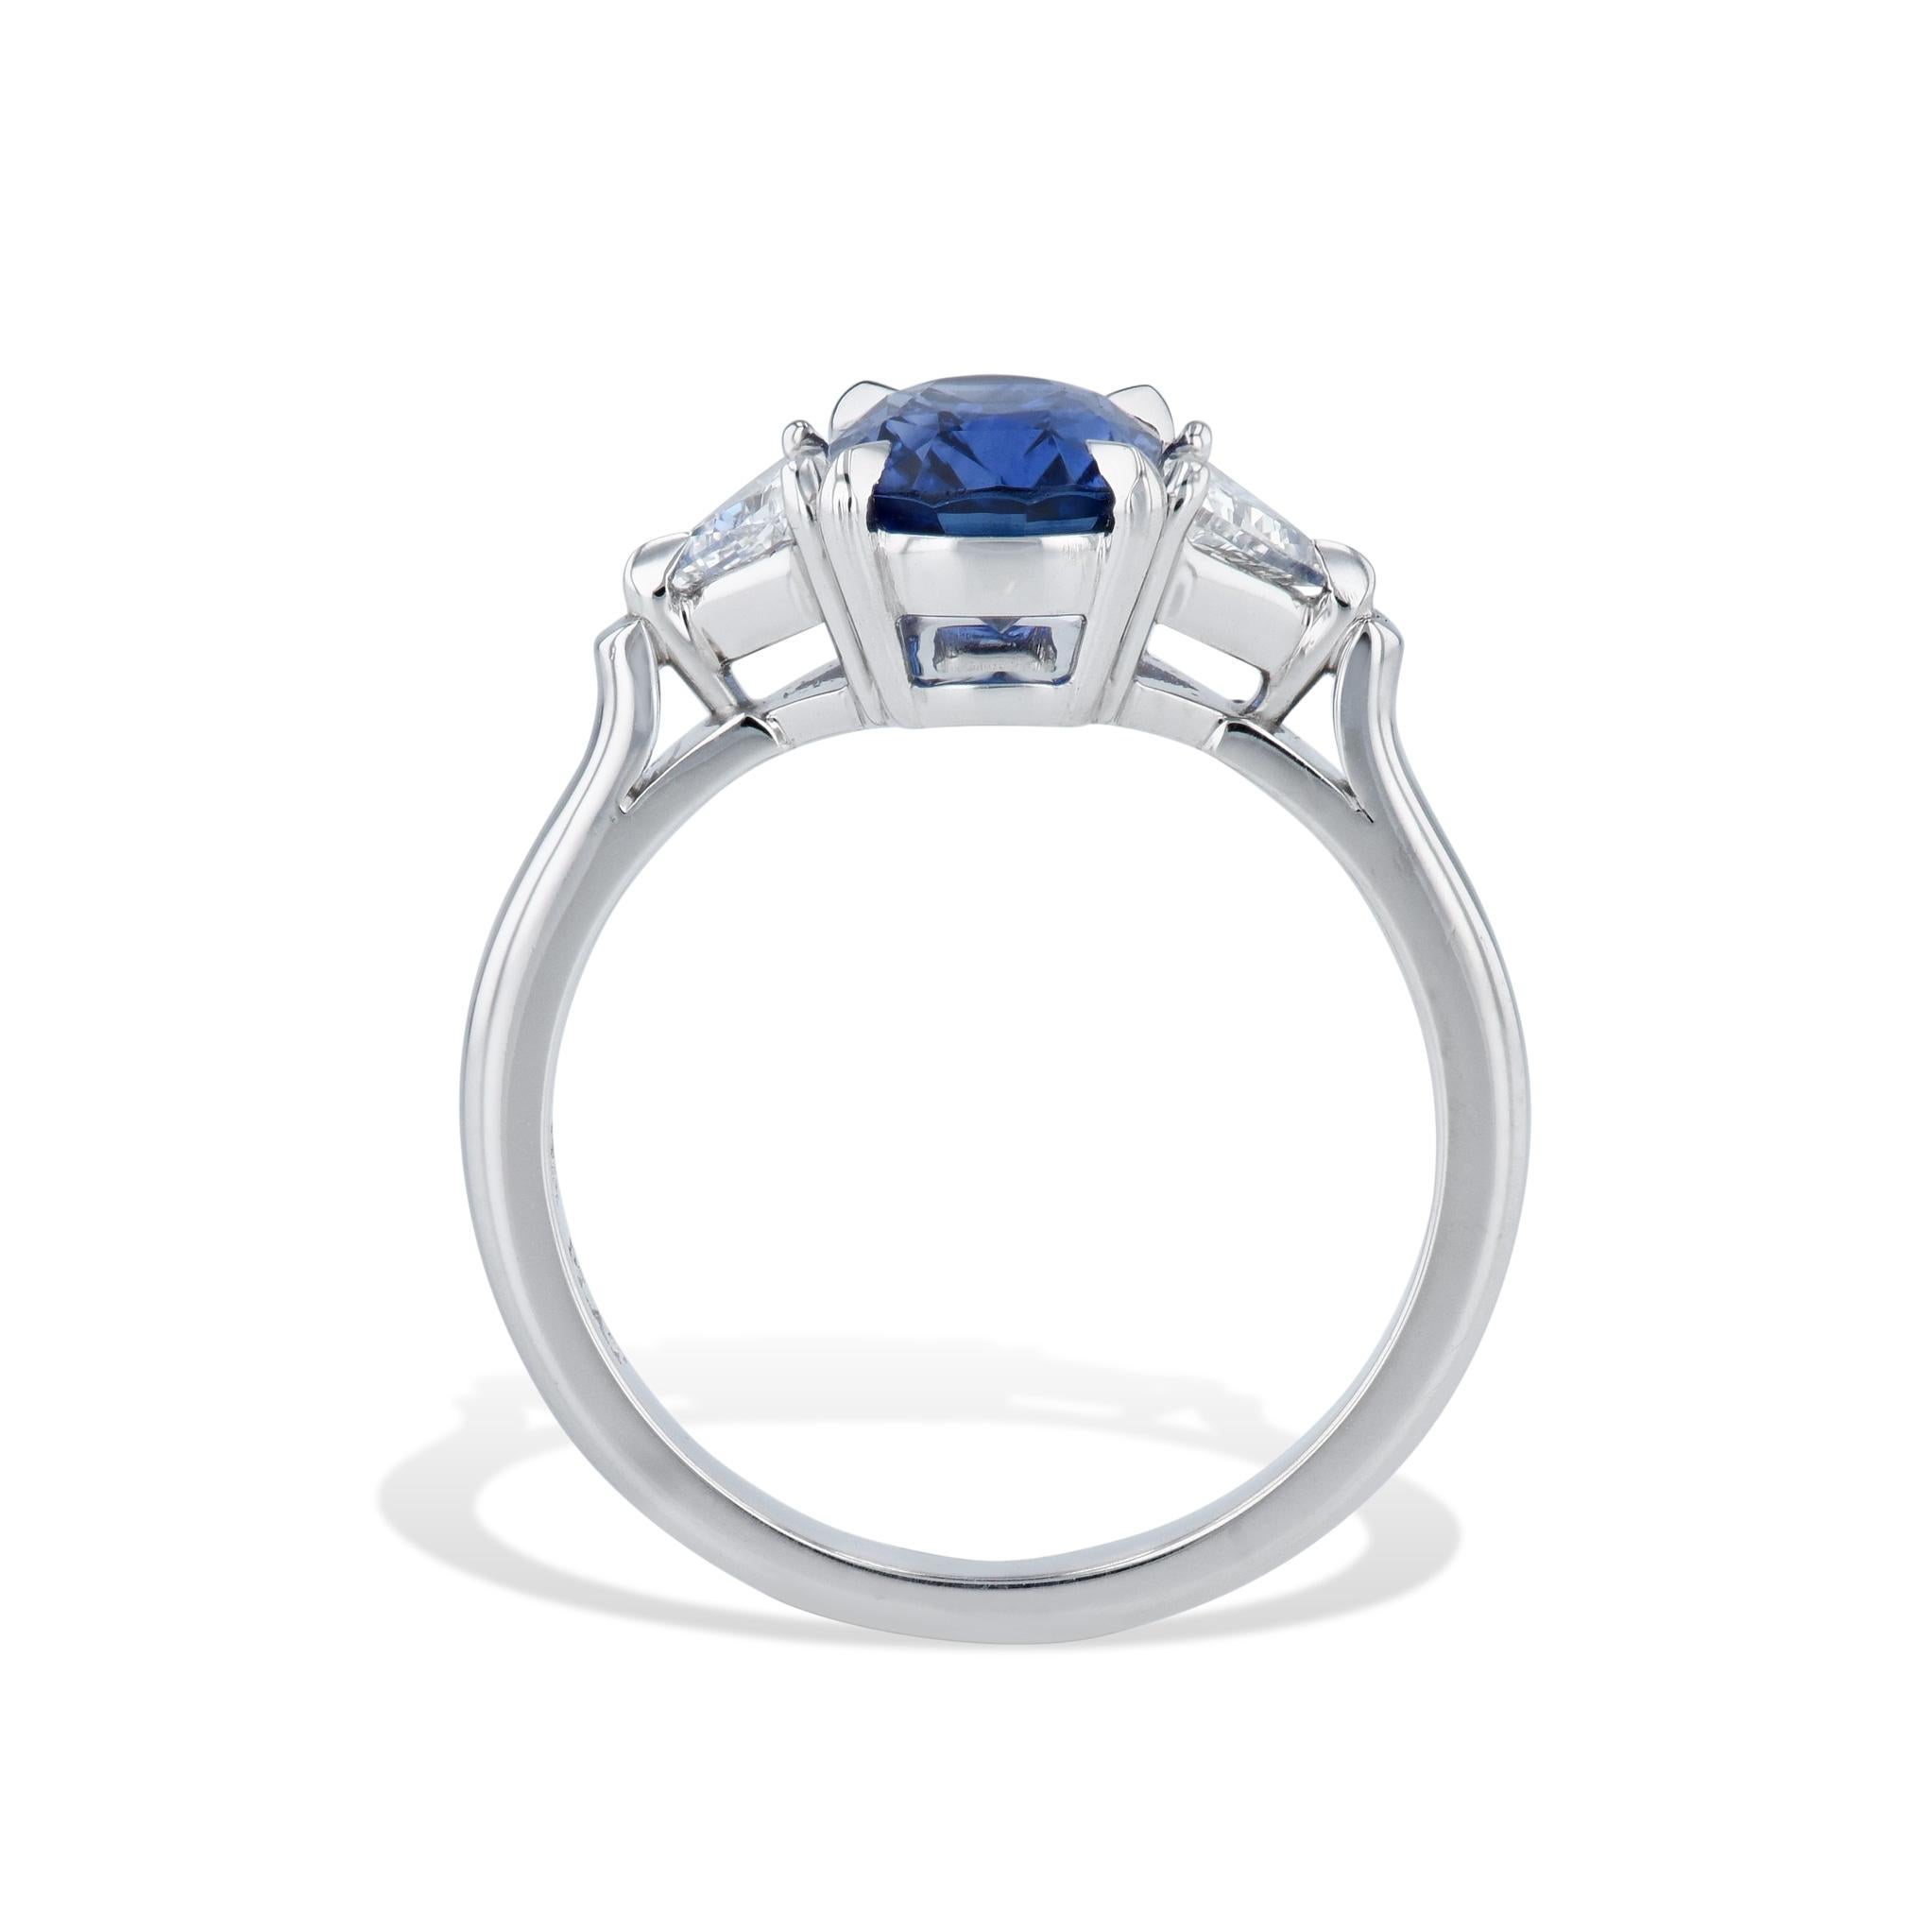 Beeindruckender Madagaskar Blue Sapphire Diamond Trillion Platinum Ring! 
Lassen Sie sich von einem schillernden blauen Madagaskar-Saphir im Kissenschliff im Herzen dieses handgefertigten Meisterstücks der HH Collection'S verzaubern. 
Ergänzt durch